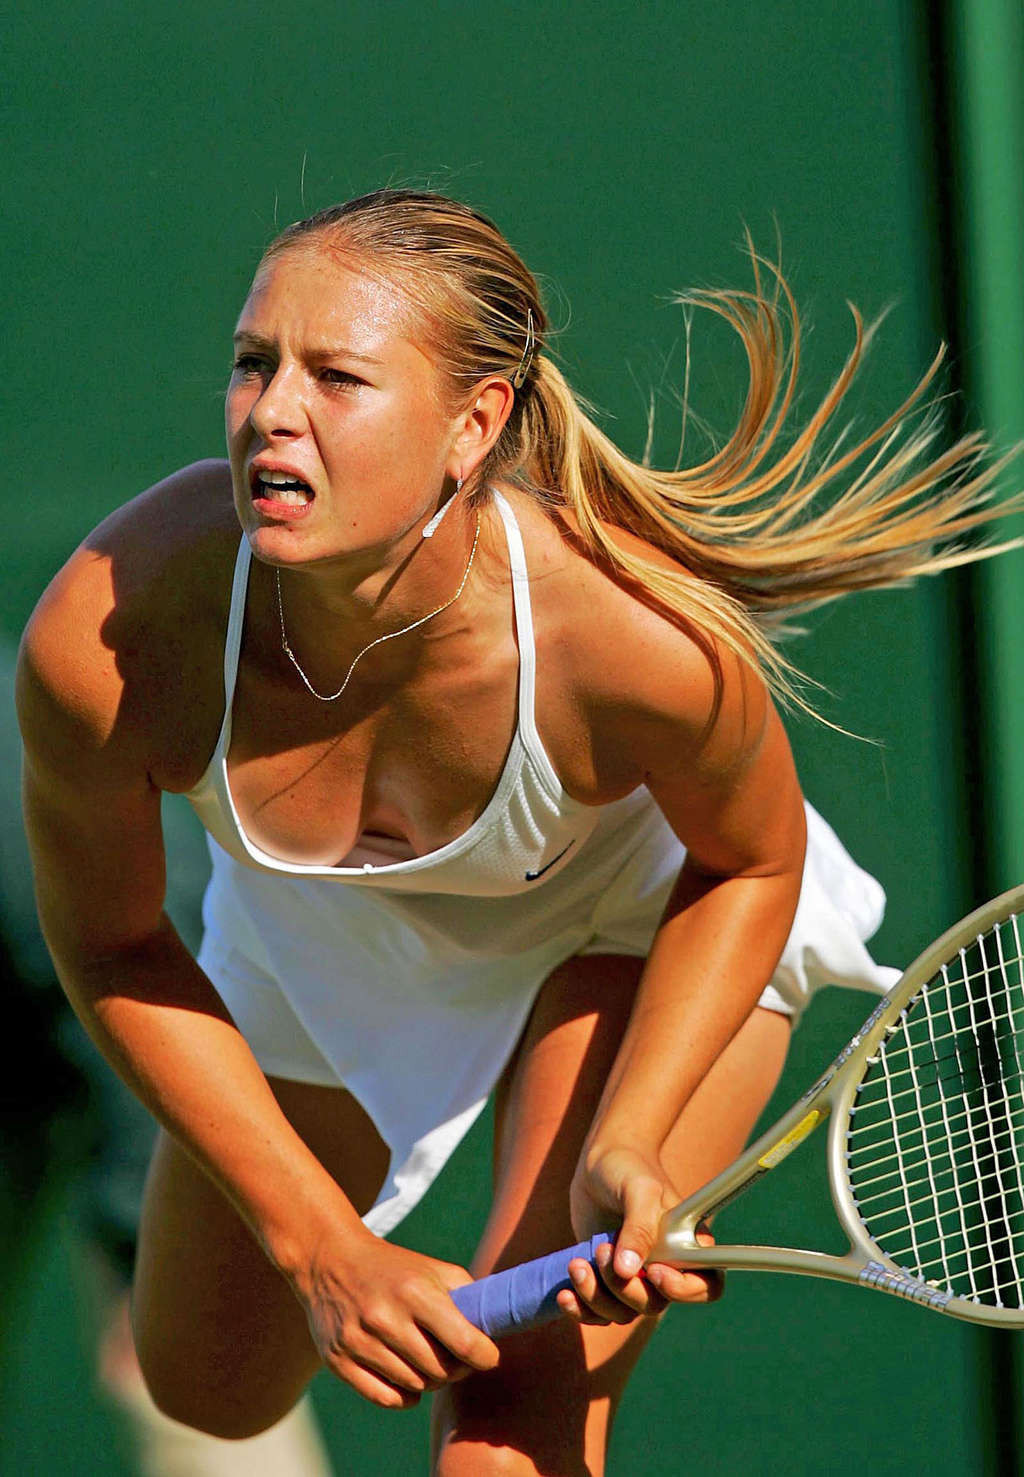 Maria Sharapova nipple slip while play tennis paparazzi shoots #75346458